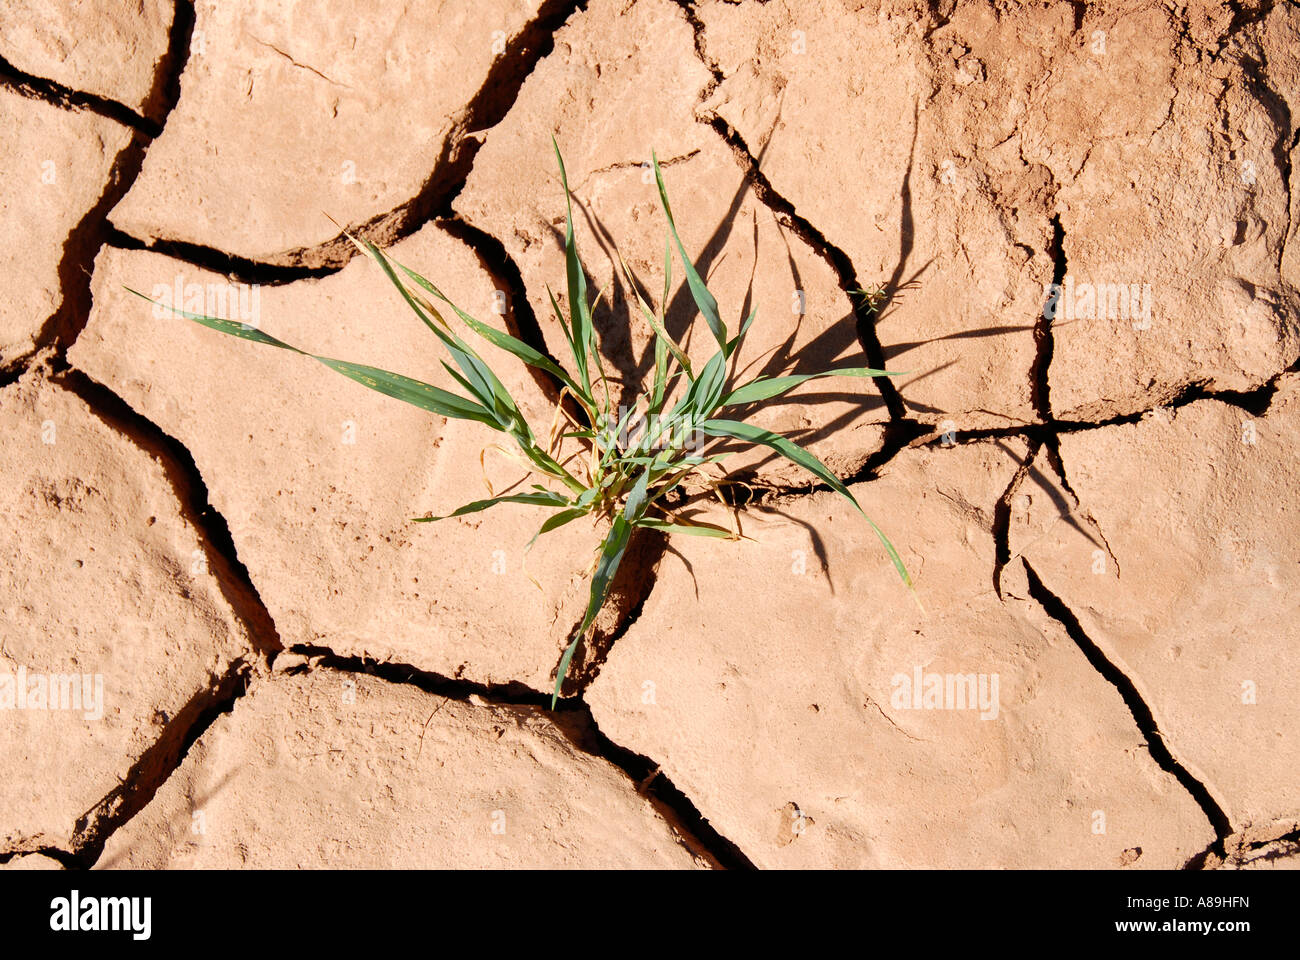 Pianta verde cresce a secco e strappato aperto siccità del suolo vicino a Mhamid Marocco Foto Stock